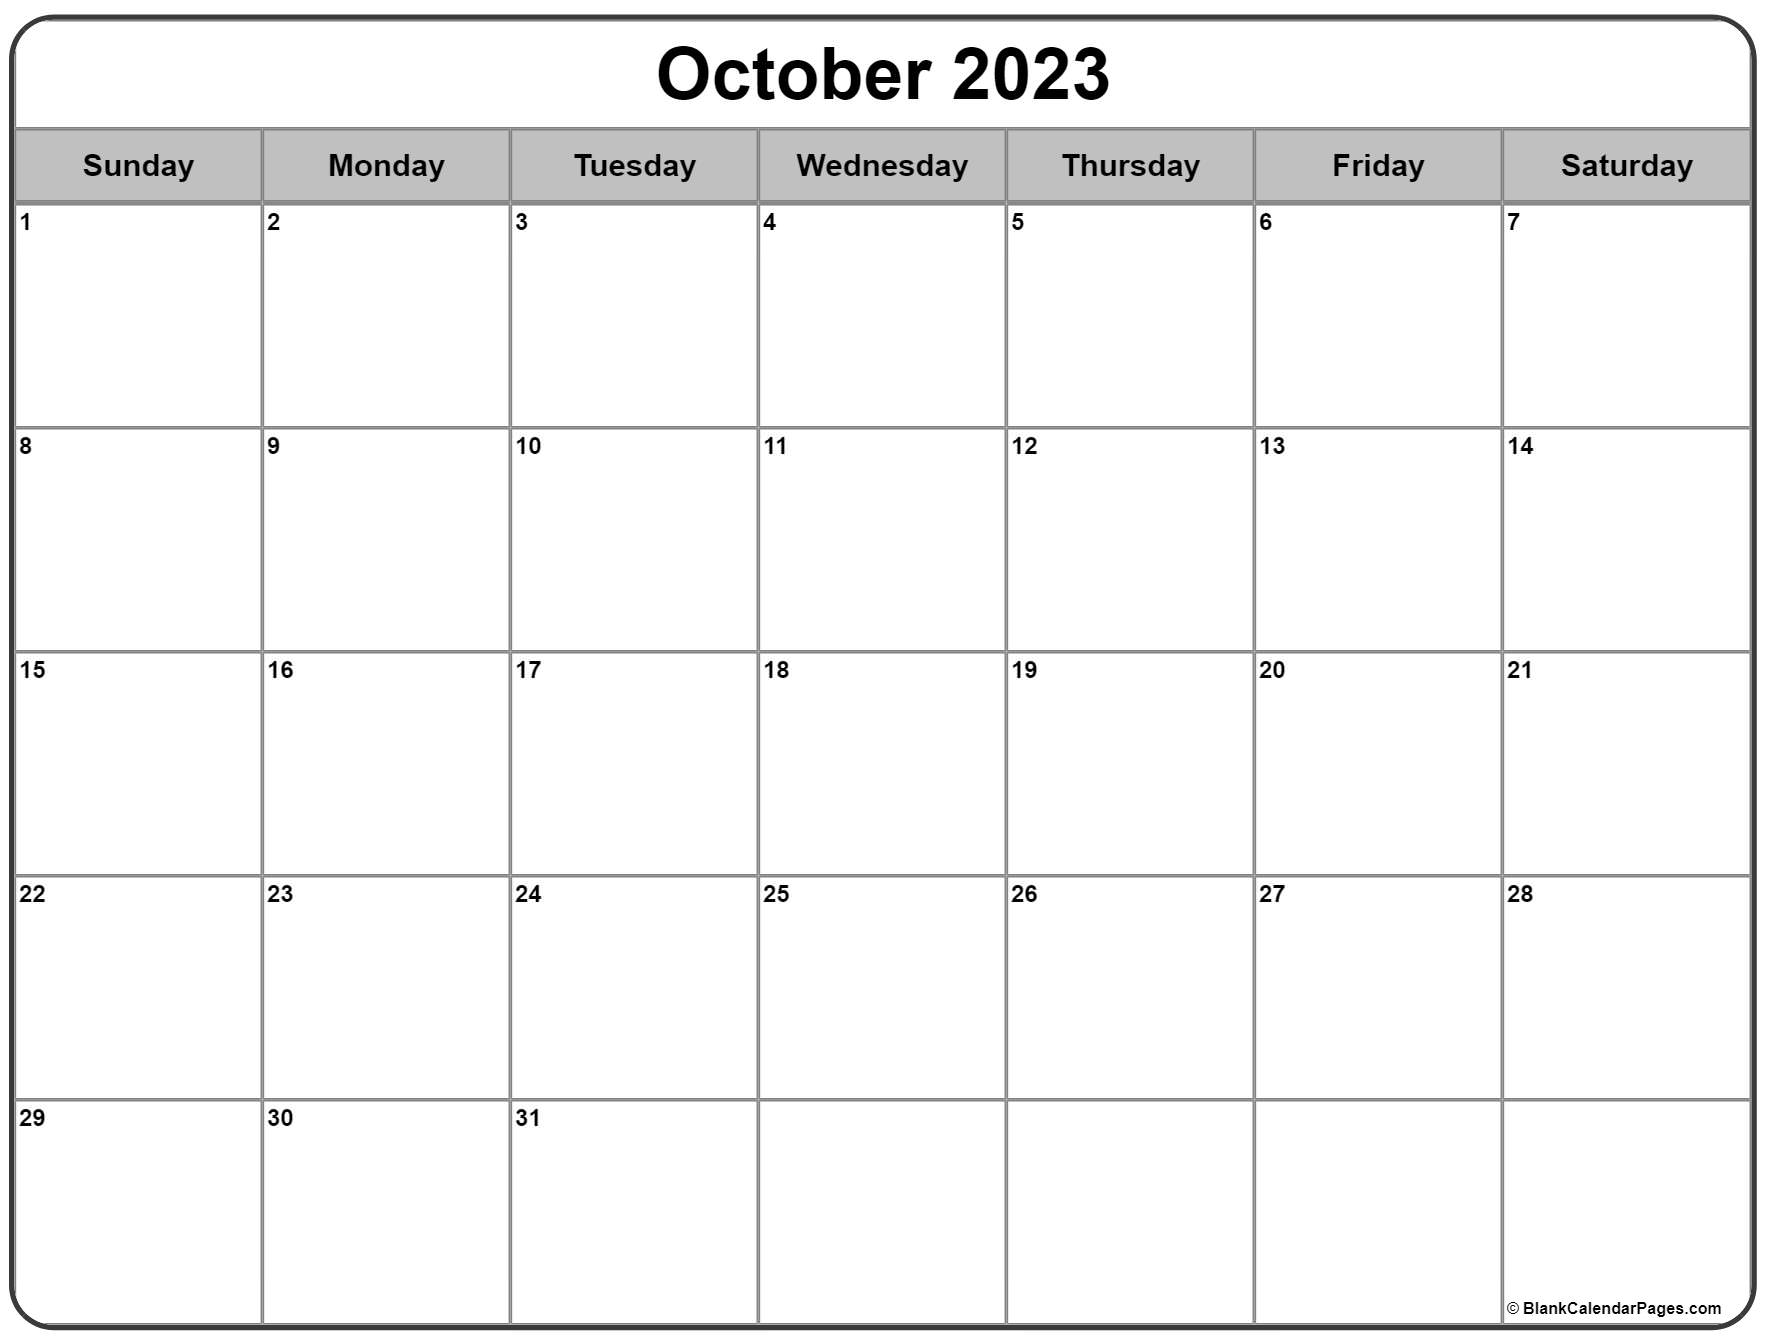 October 2023 calendar | free printable calendar